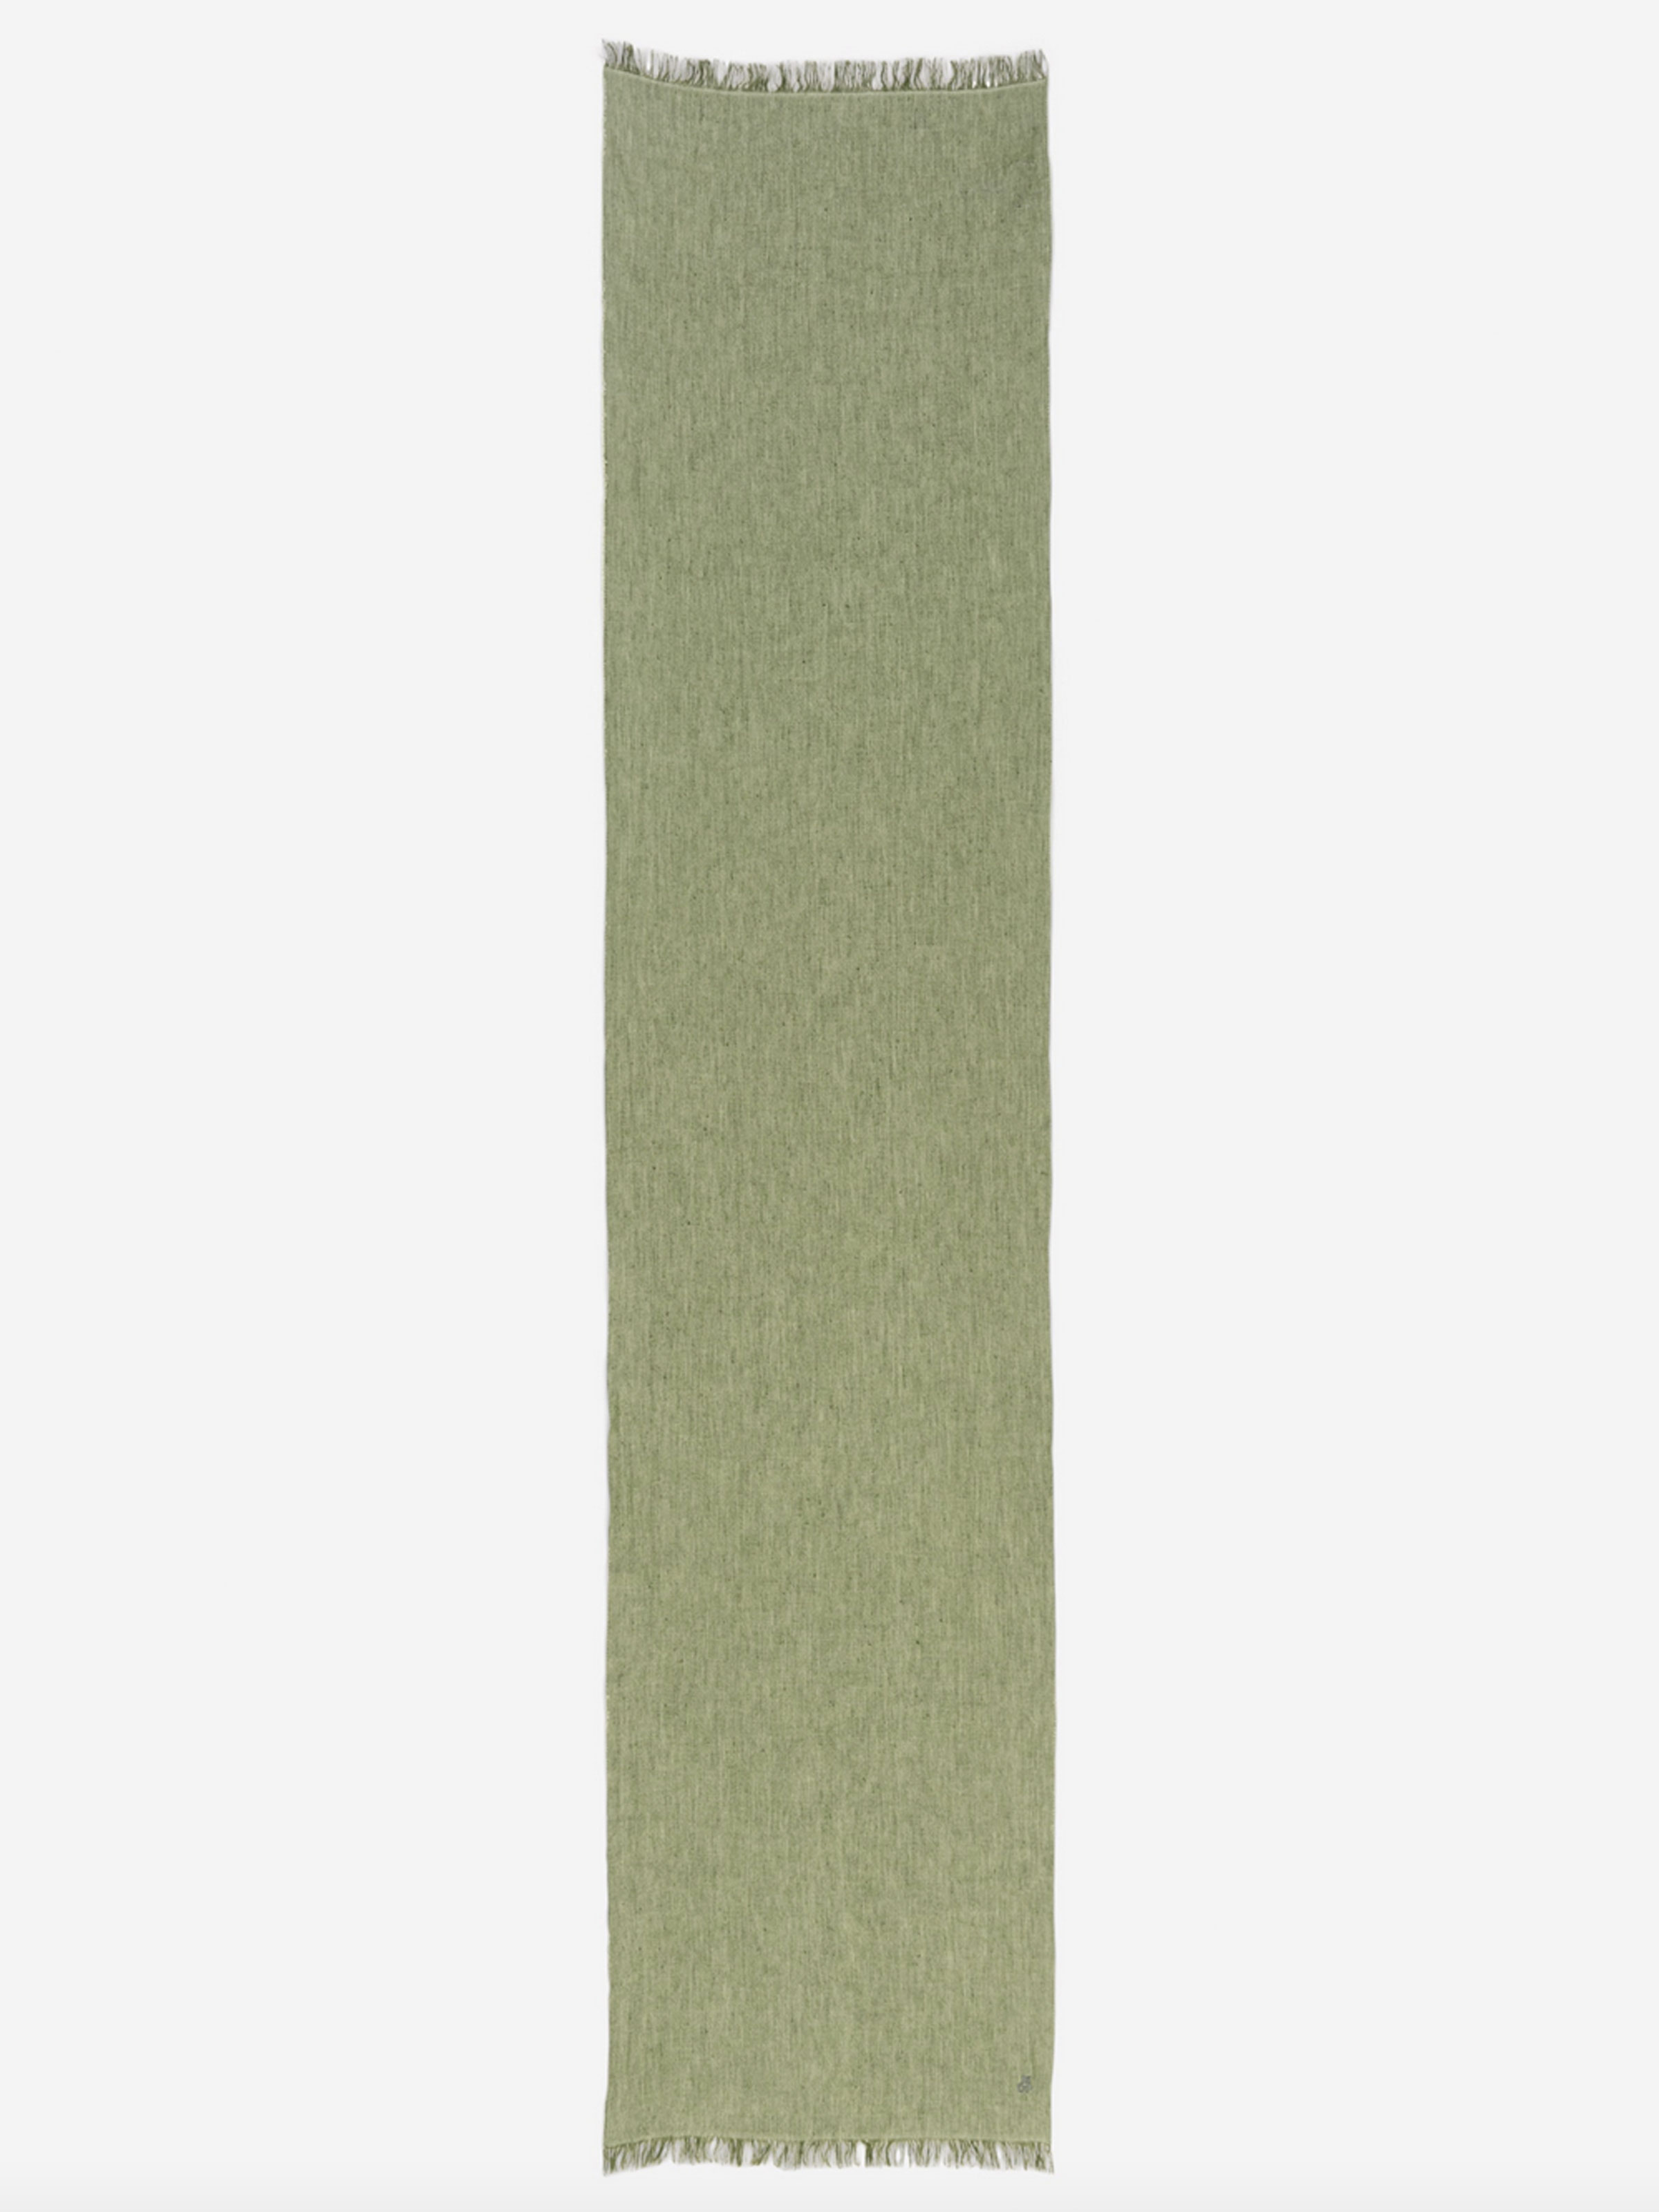 Olivgrüner Schal